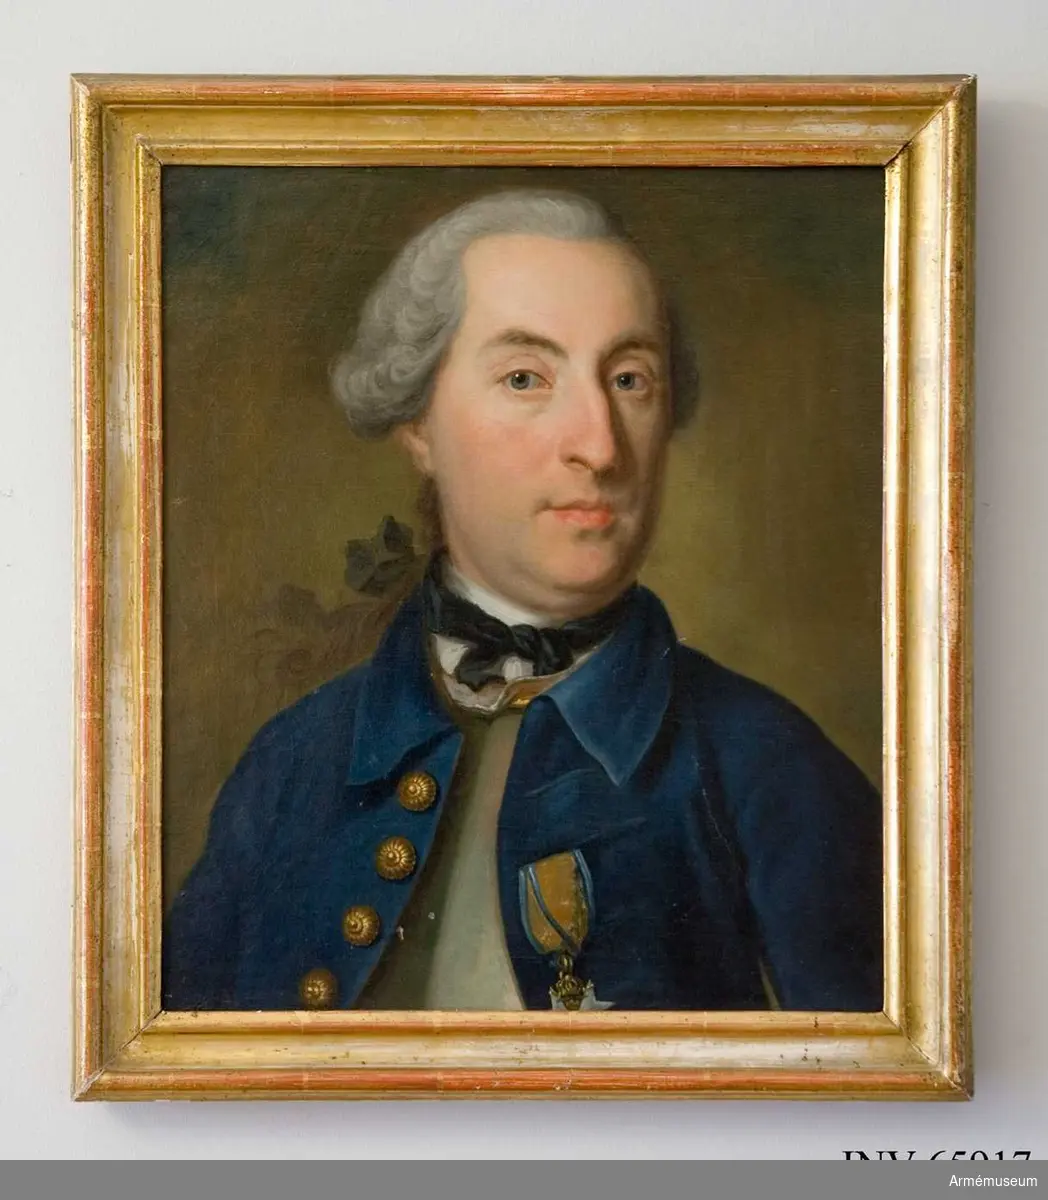 Oljemålning i form av porträtt föreställande översten vid svenska artilleriet Gustaf Gyllengranat f.1721 d.1801. Porträttet är utfört av Henrik Scheffel (1690-1781) 1756. Gyllengranat är porträtterad framifrån (bröstbild) i uppknäppt blå uniform med nedvikt krage och förgyllda knappar. Han bär svärdsordens riddartecken. Huvudet är bart. Infattning: enkel förgylld trälist.

Text på baksidan: "Maijoren Wid Kun Artill: Frijherre Hans Gustaf, Gyllengranat. J:H: Scheffel p: 1756."